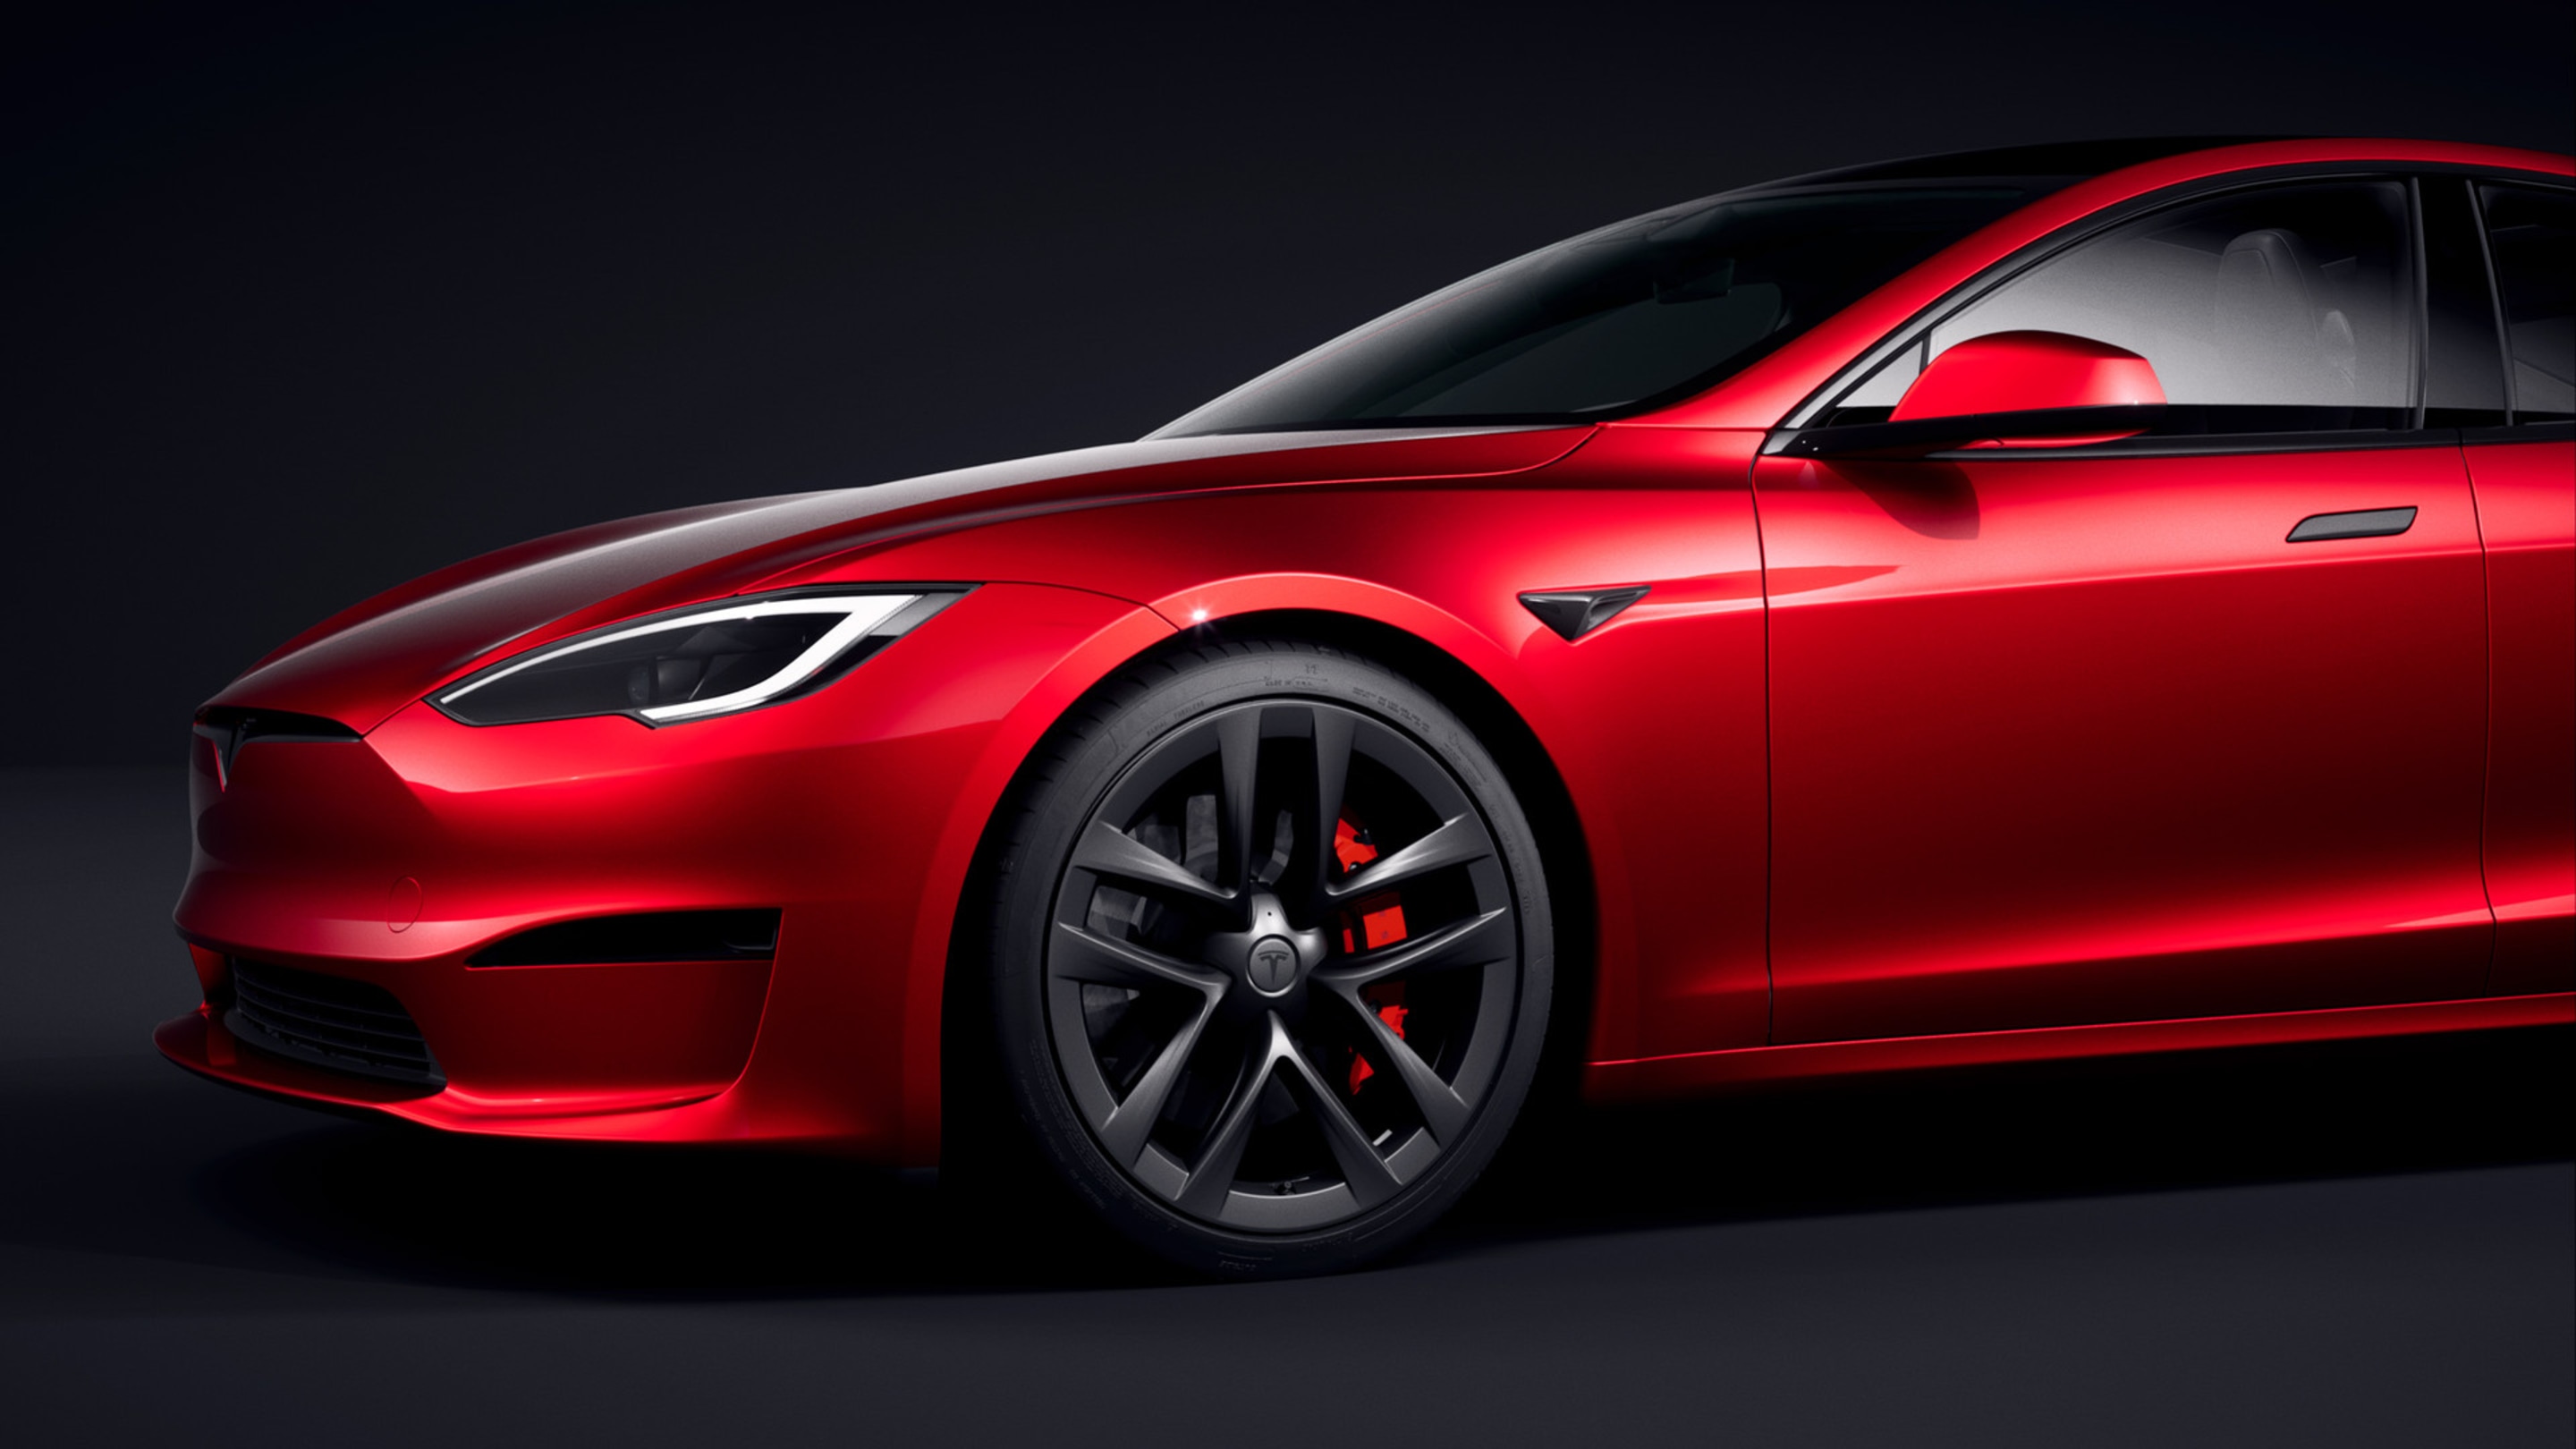 Vista frontale-laterale della Model S rossa